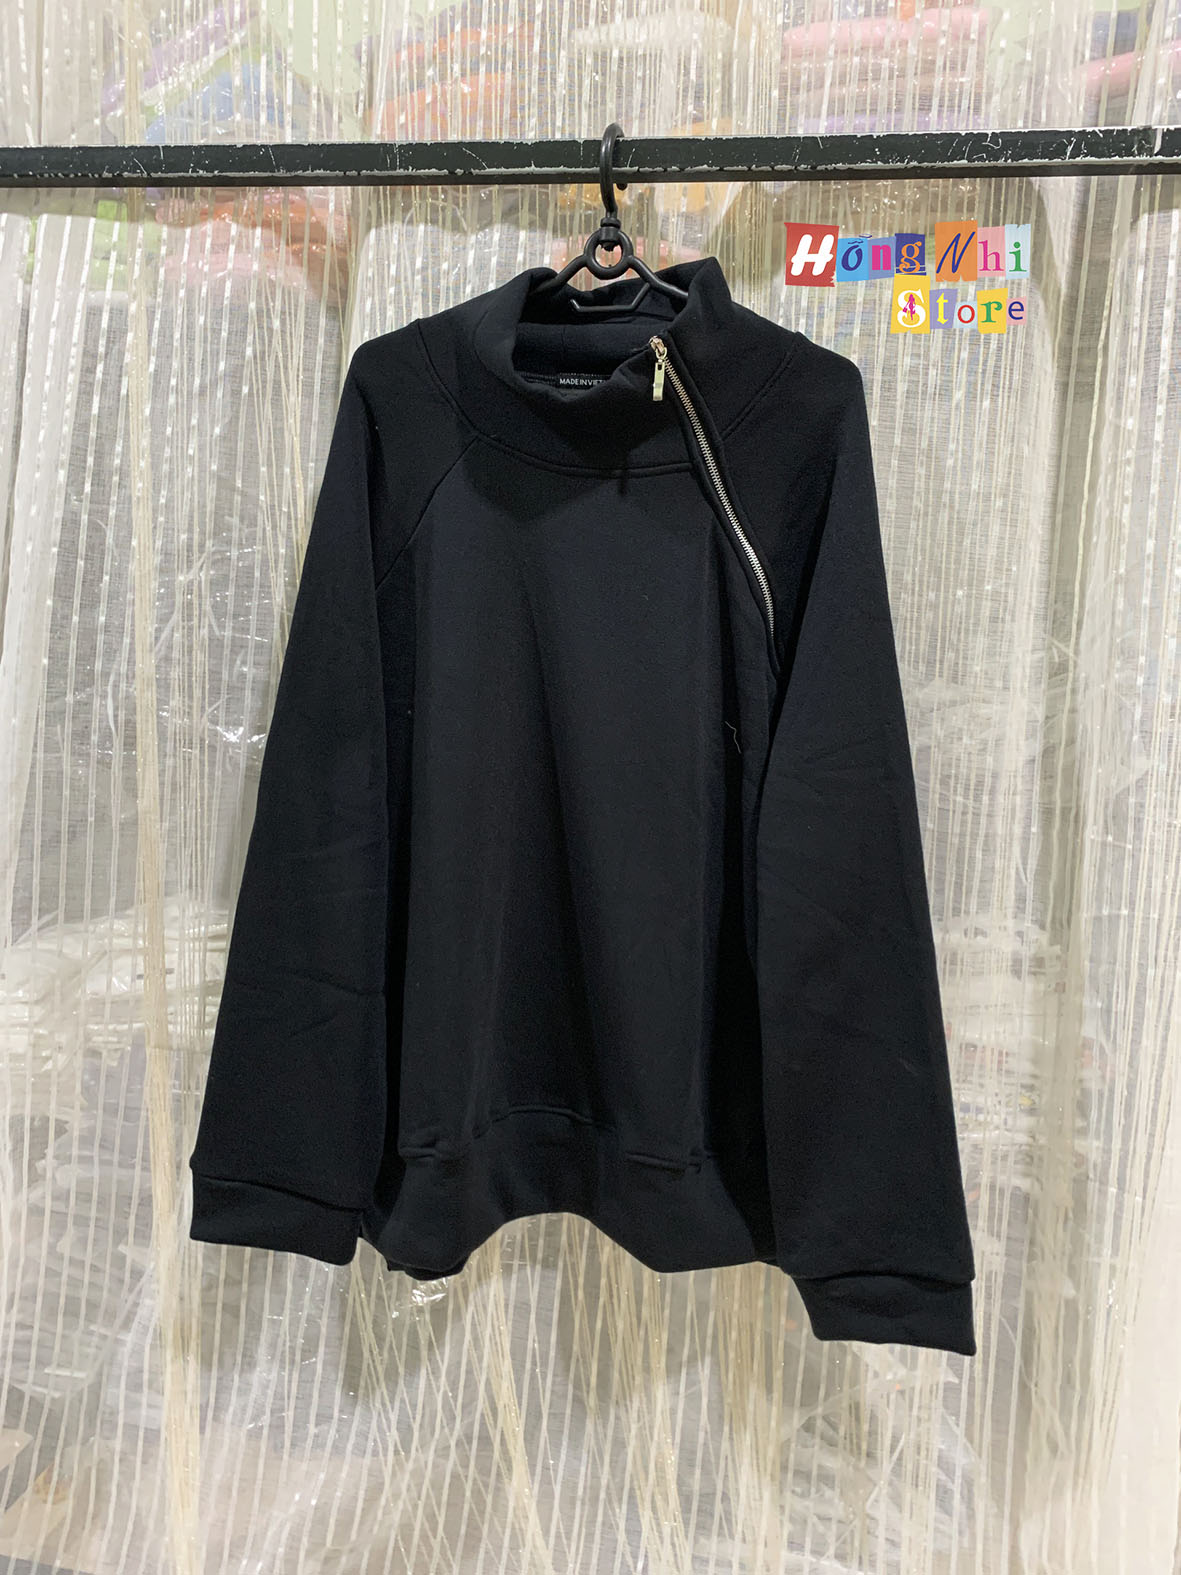 Áo Khoác Jacket Zip Unisex Black - Khoác Nỉ Dây Kéo Màu Đen - MM